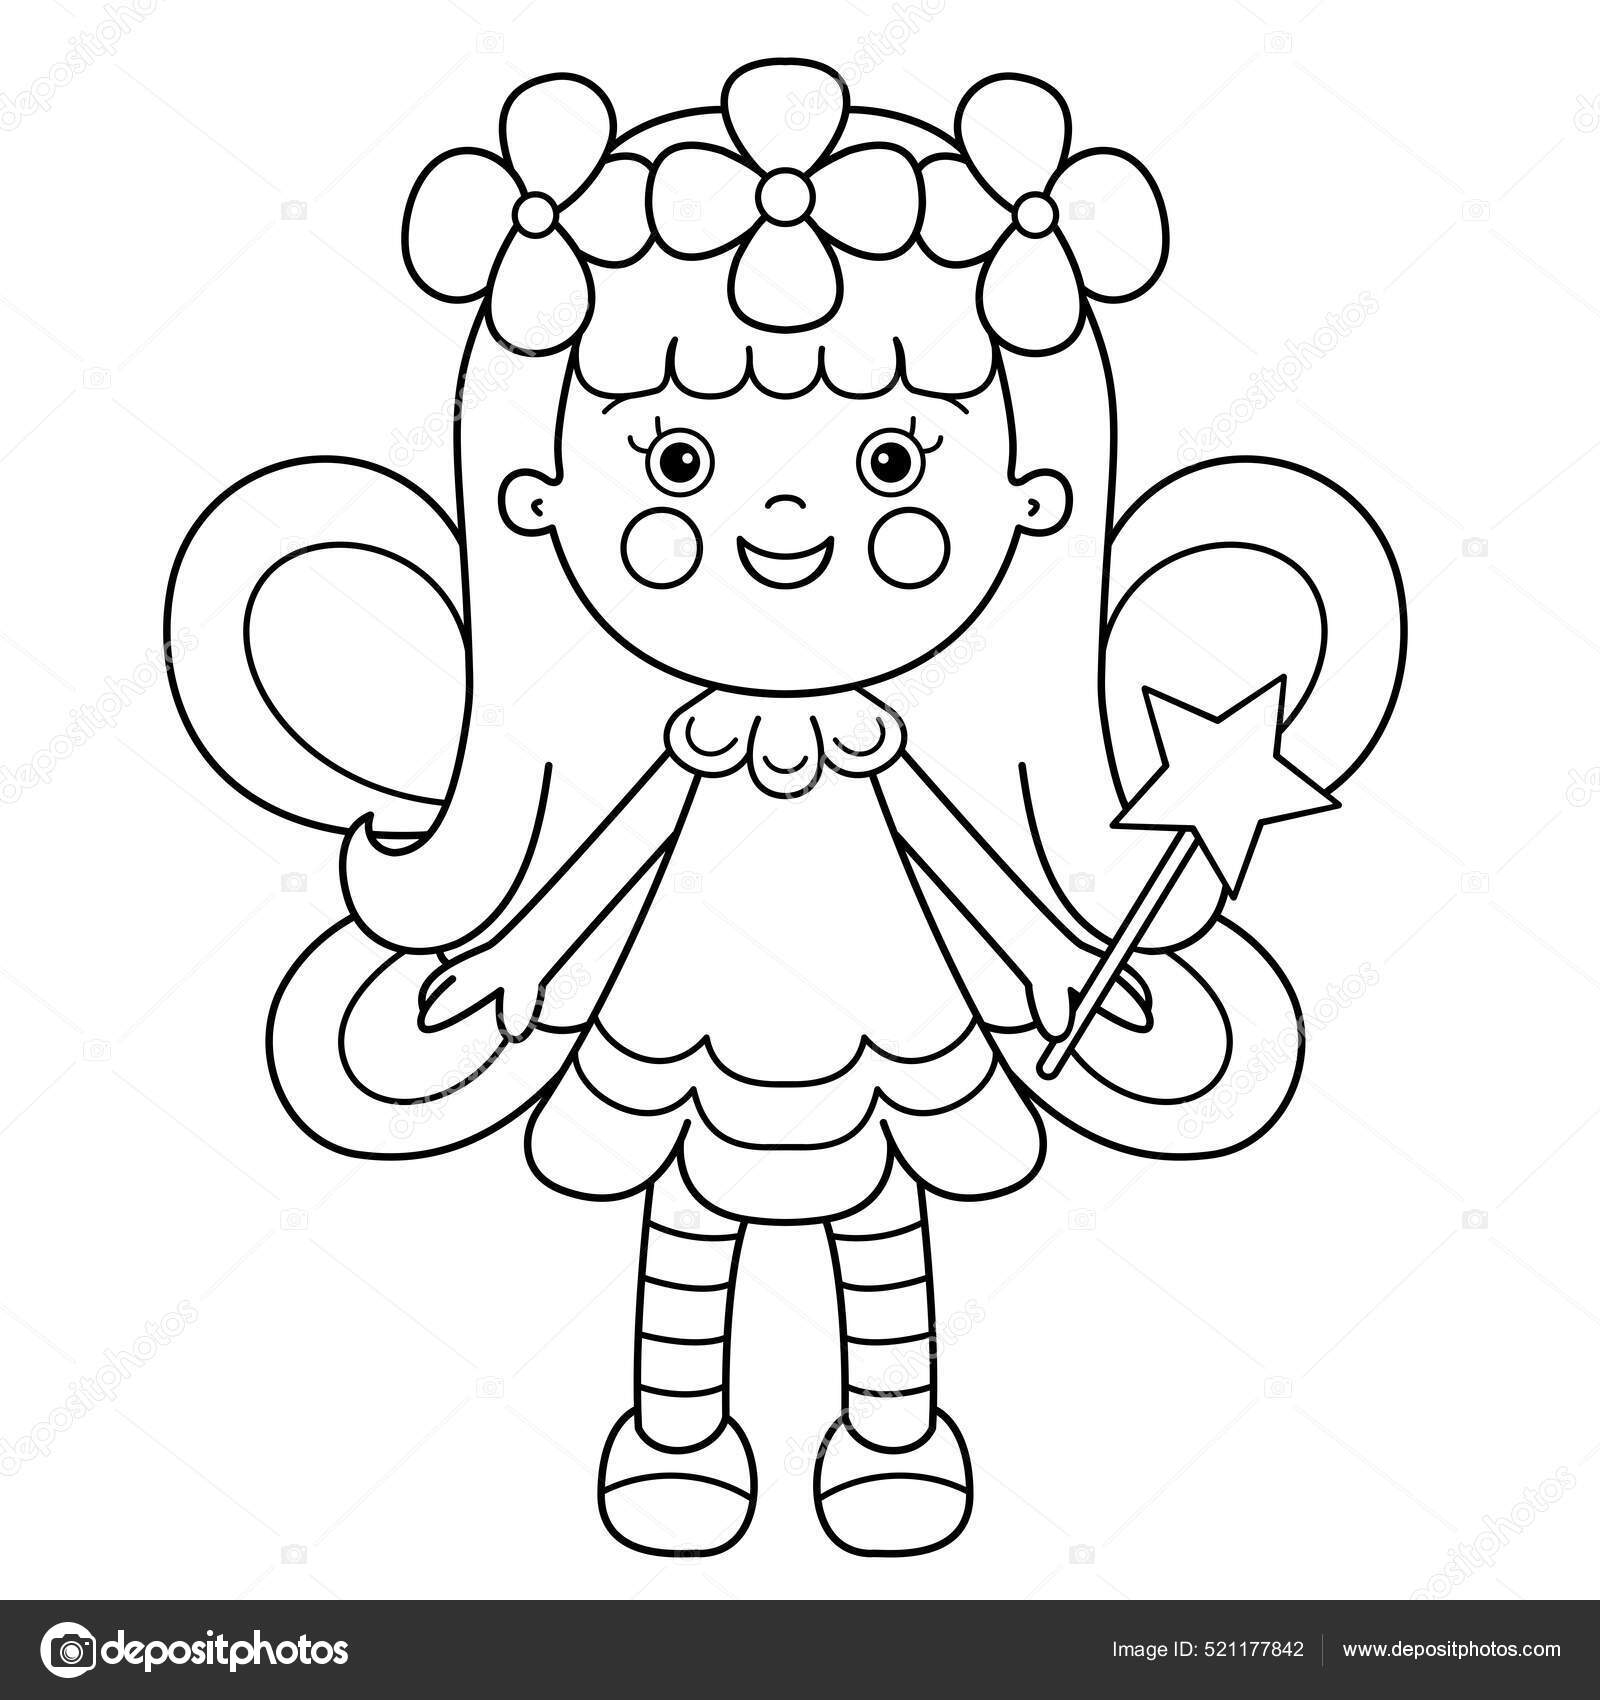 Boneca princesa mágica menina dos desenhos animados